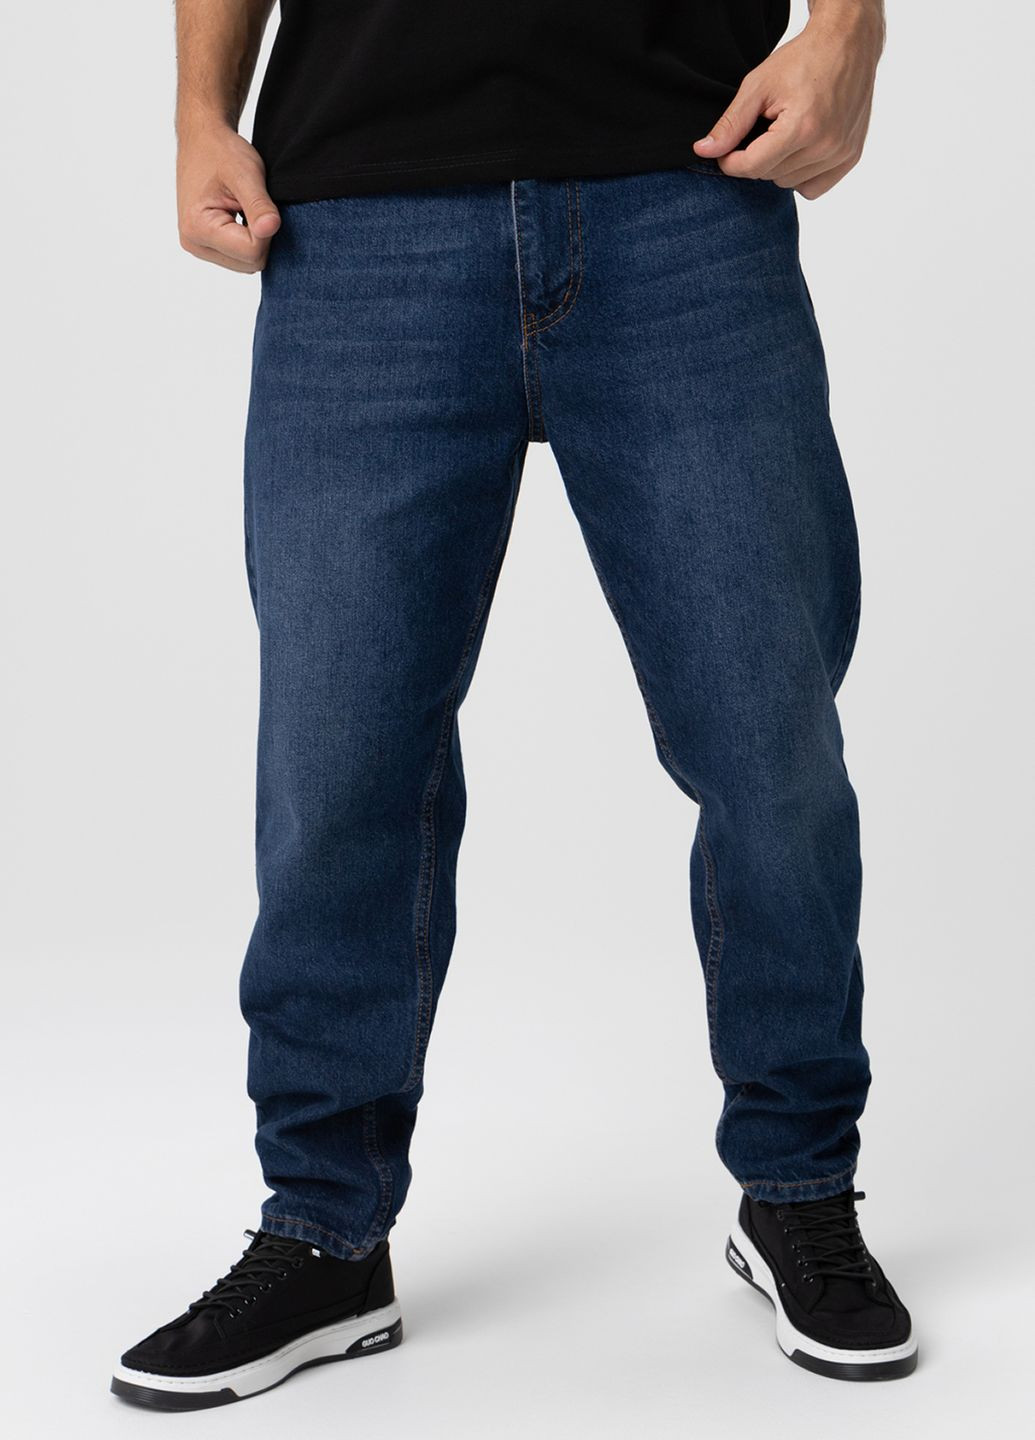 Темно-синие демисезонные джинсы mom fit Figo